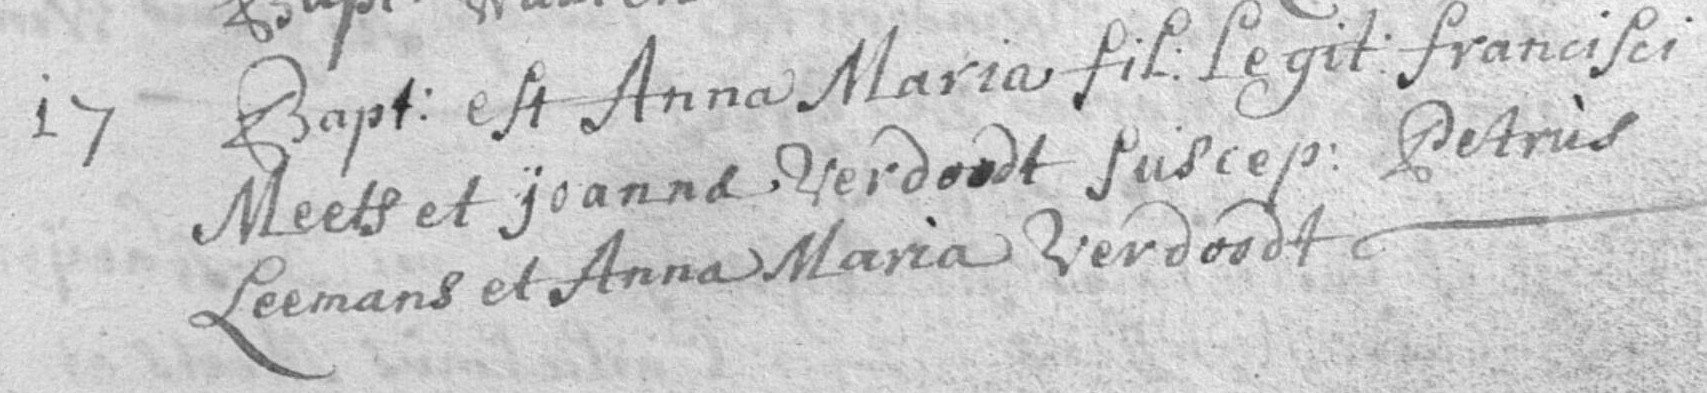 1739-AnnaMariaMeets17Nov1739FrancisciMeetsJoannaVerdoodt.jpg